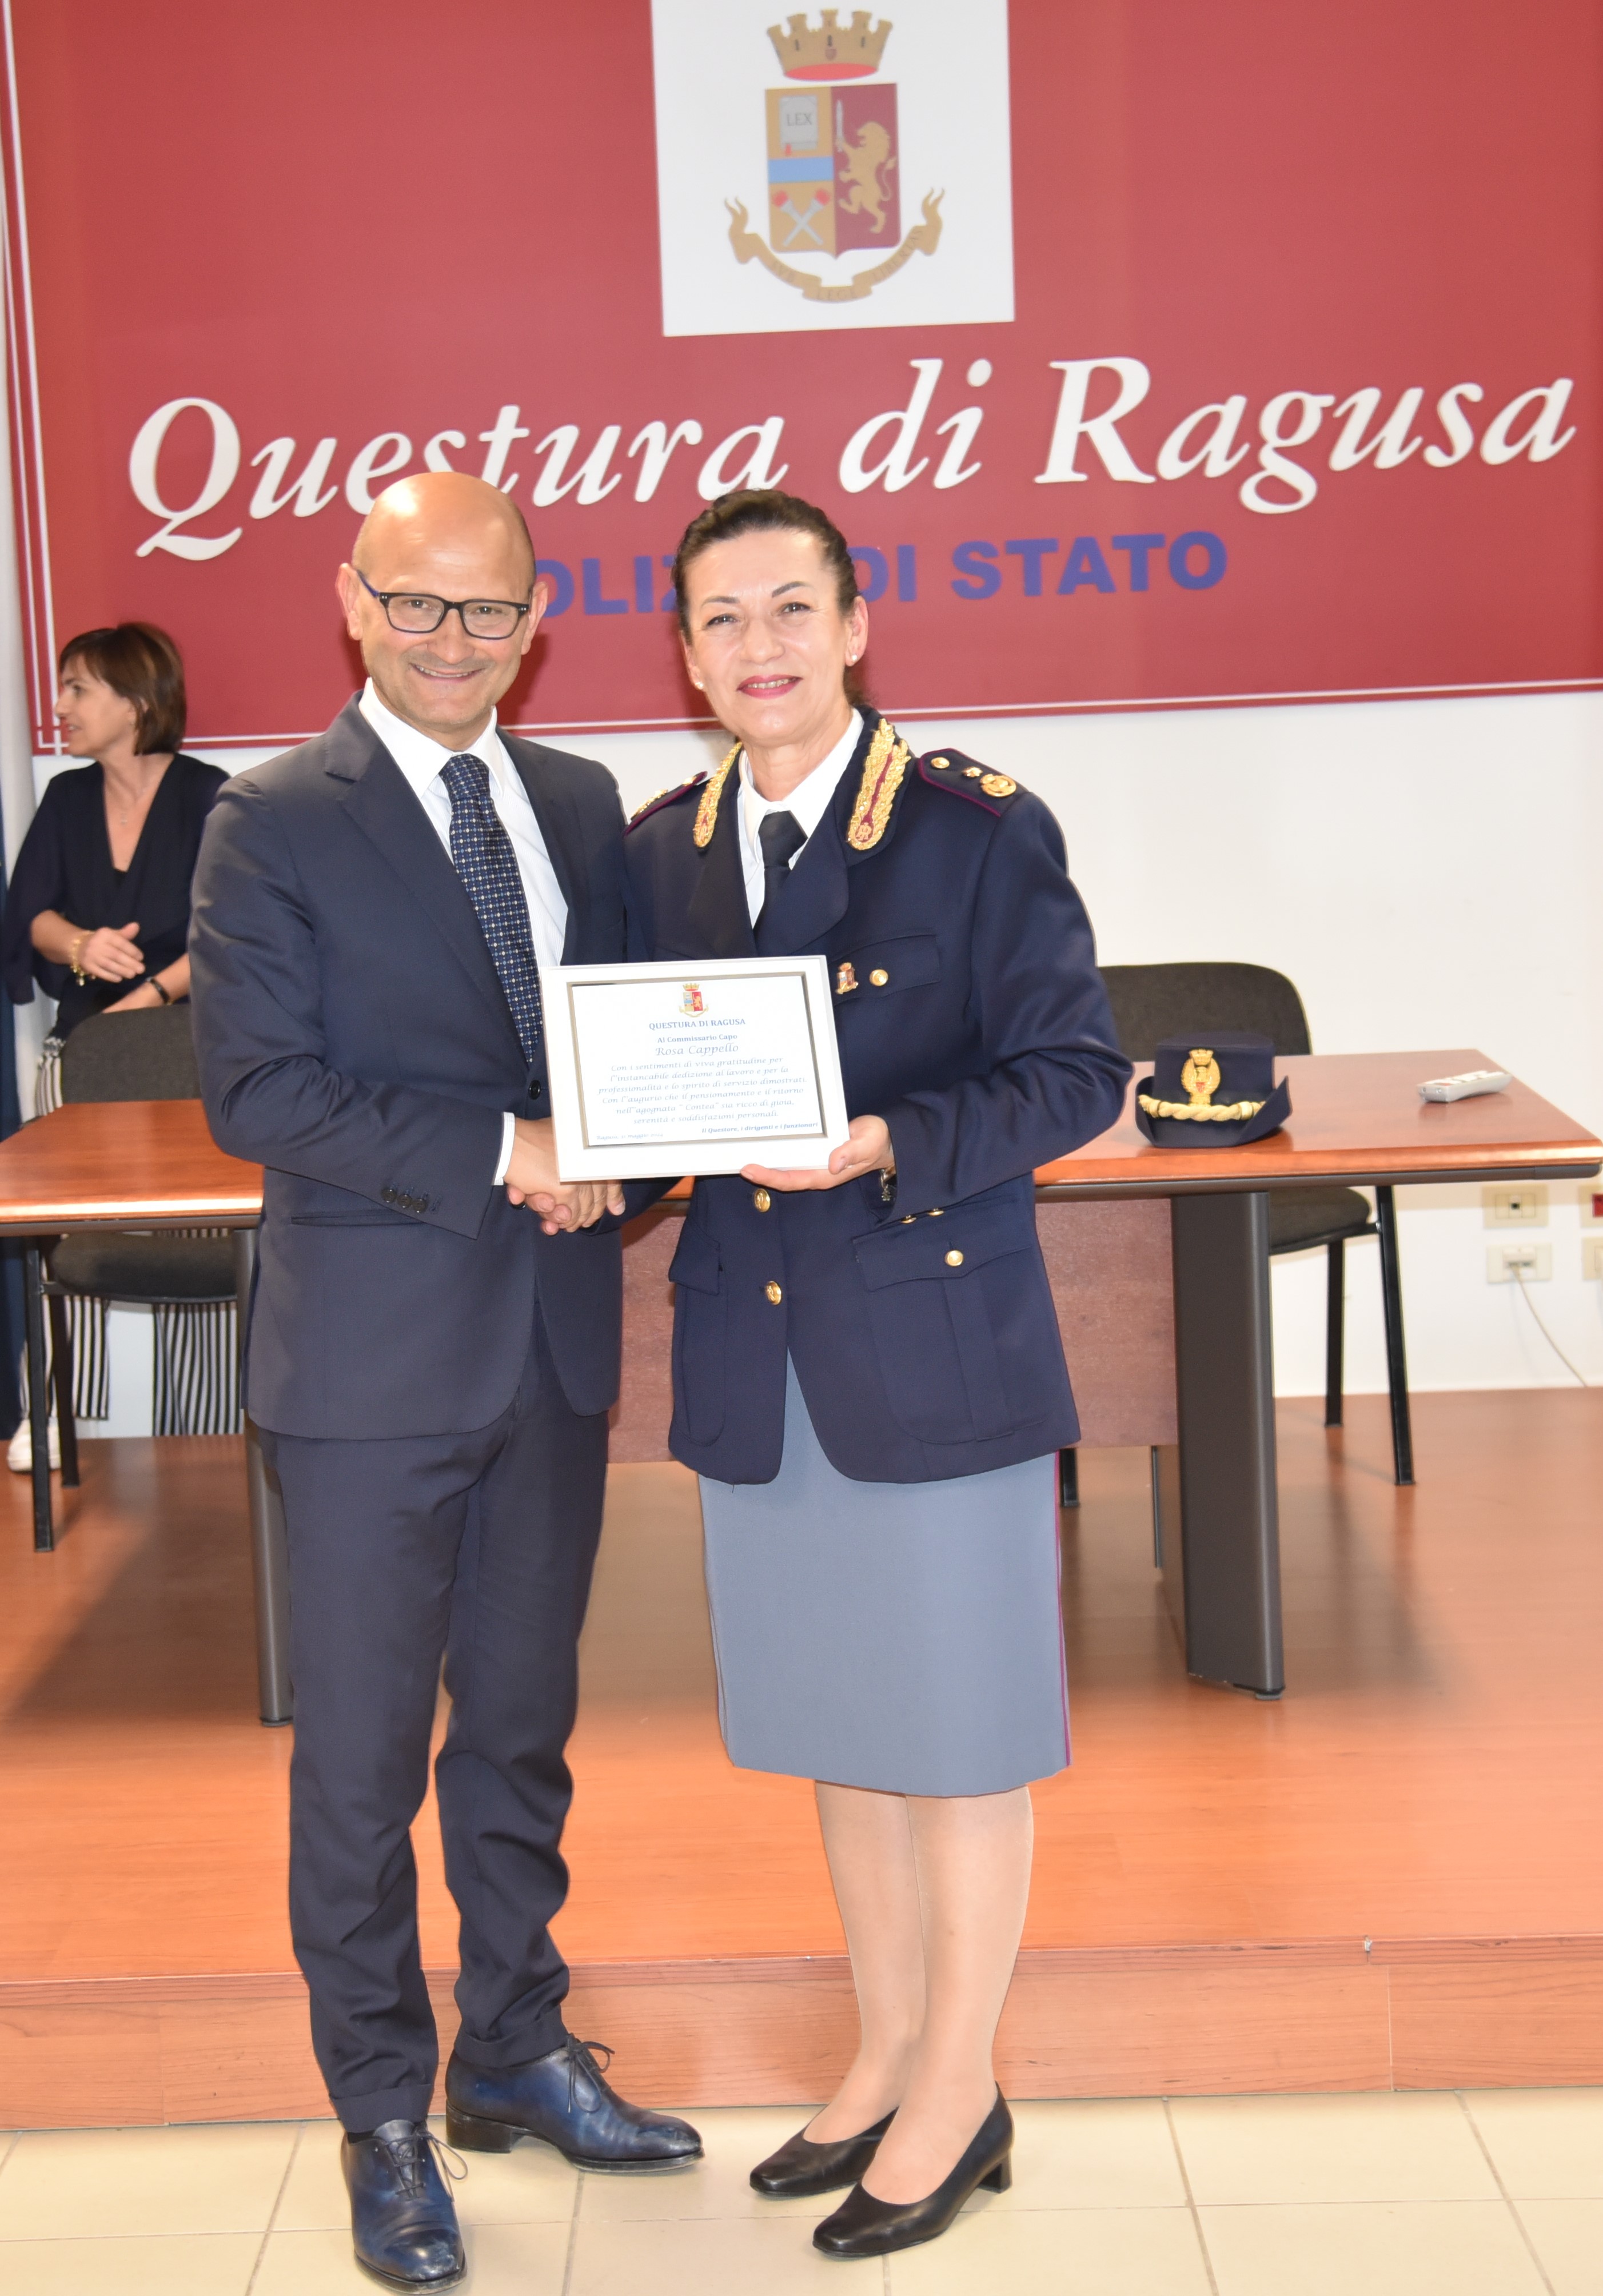 La Questura di Ragusa ha salutato il Commissario Capo “Rosa Cappello”, che ha raggiunto il traguardo della pensione